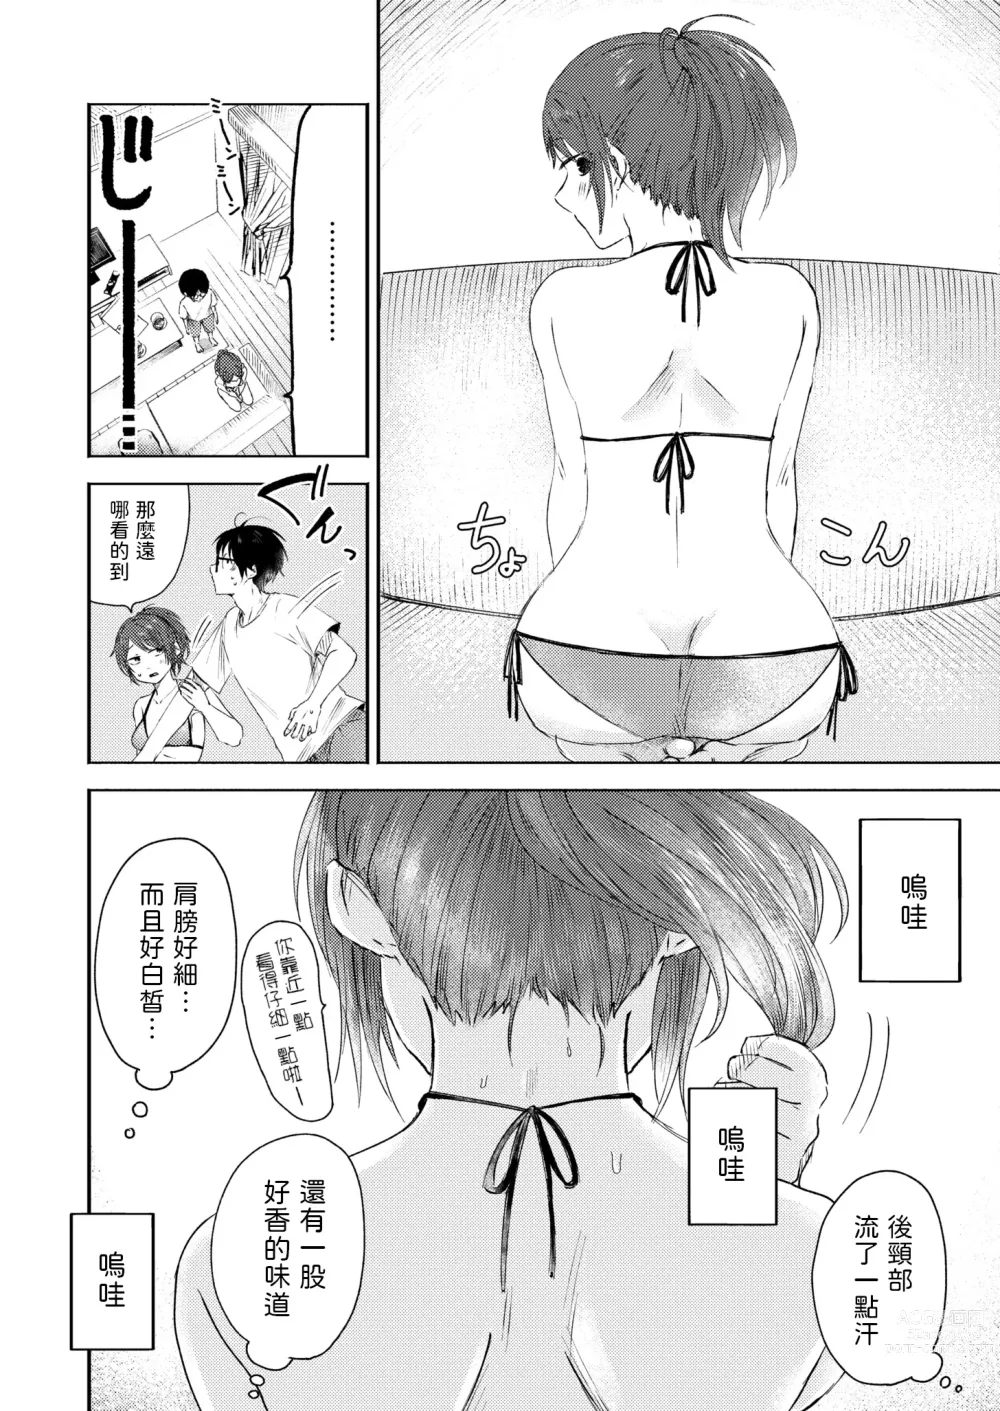 Page 6 of manga Toshigoro no Eyeline